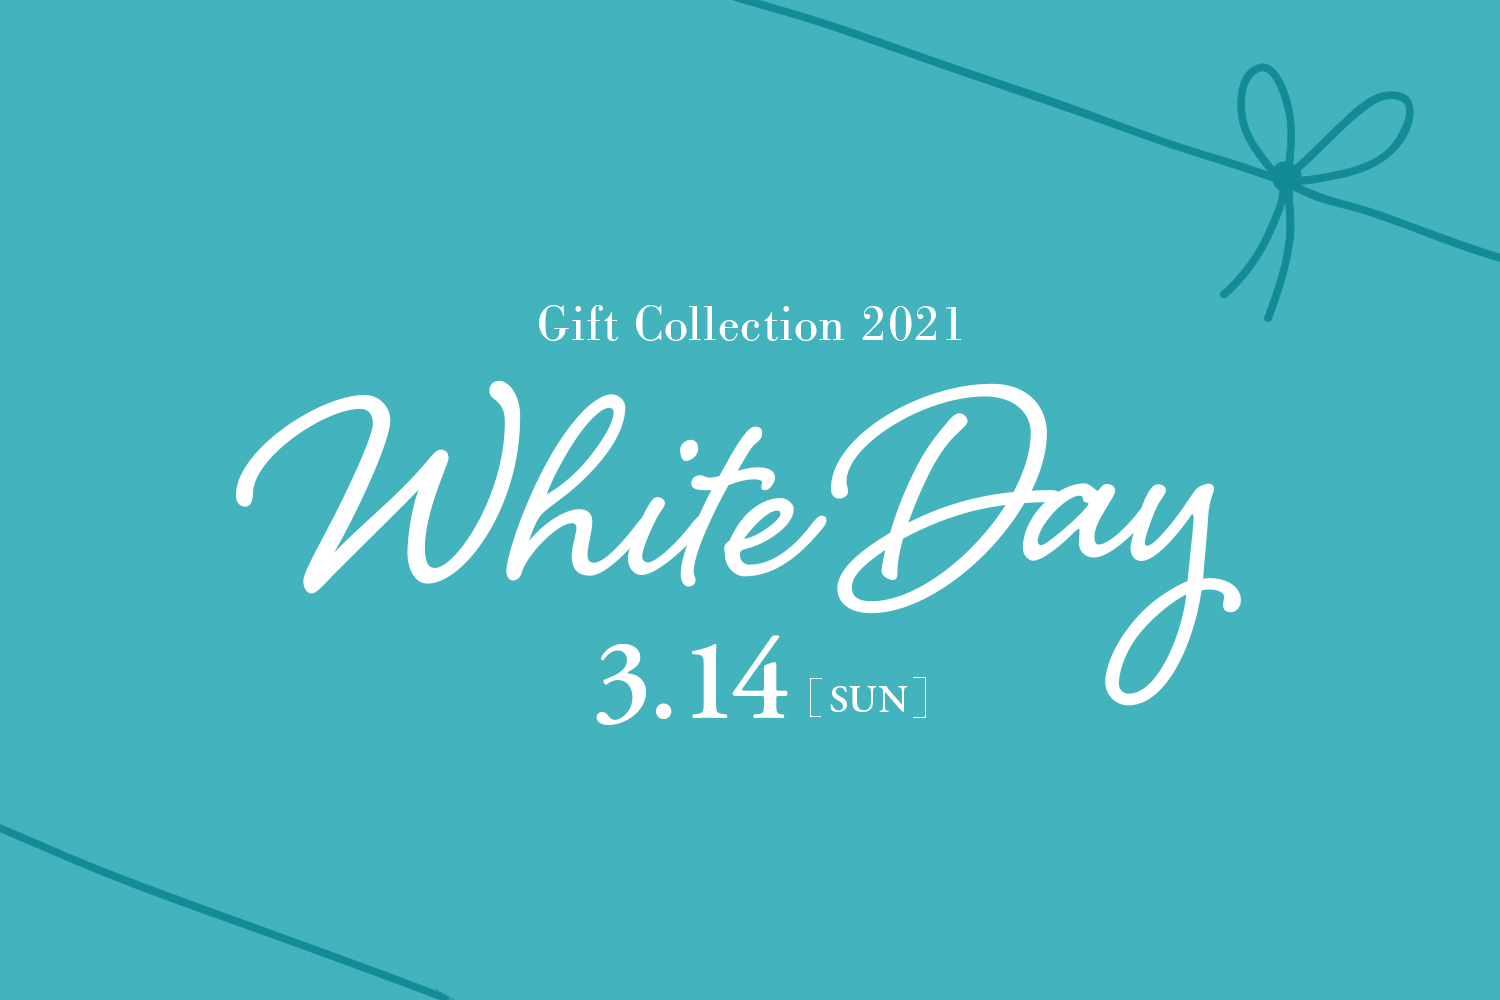 ありがとうを、カタチに。WHITE DAY GIFT Collection 2021